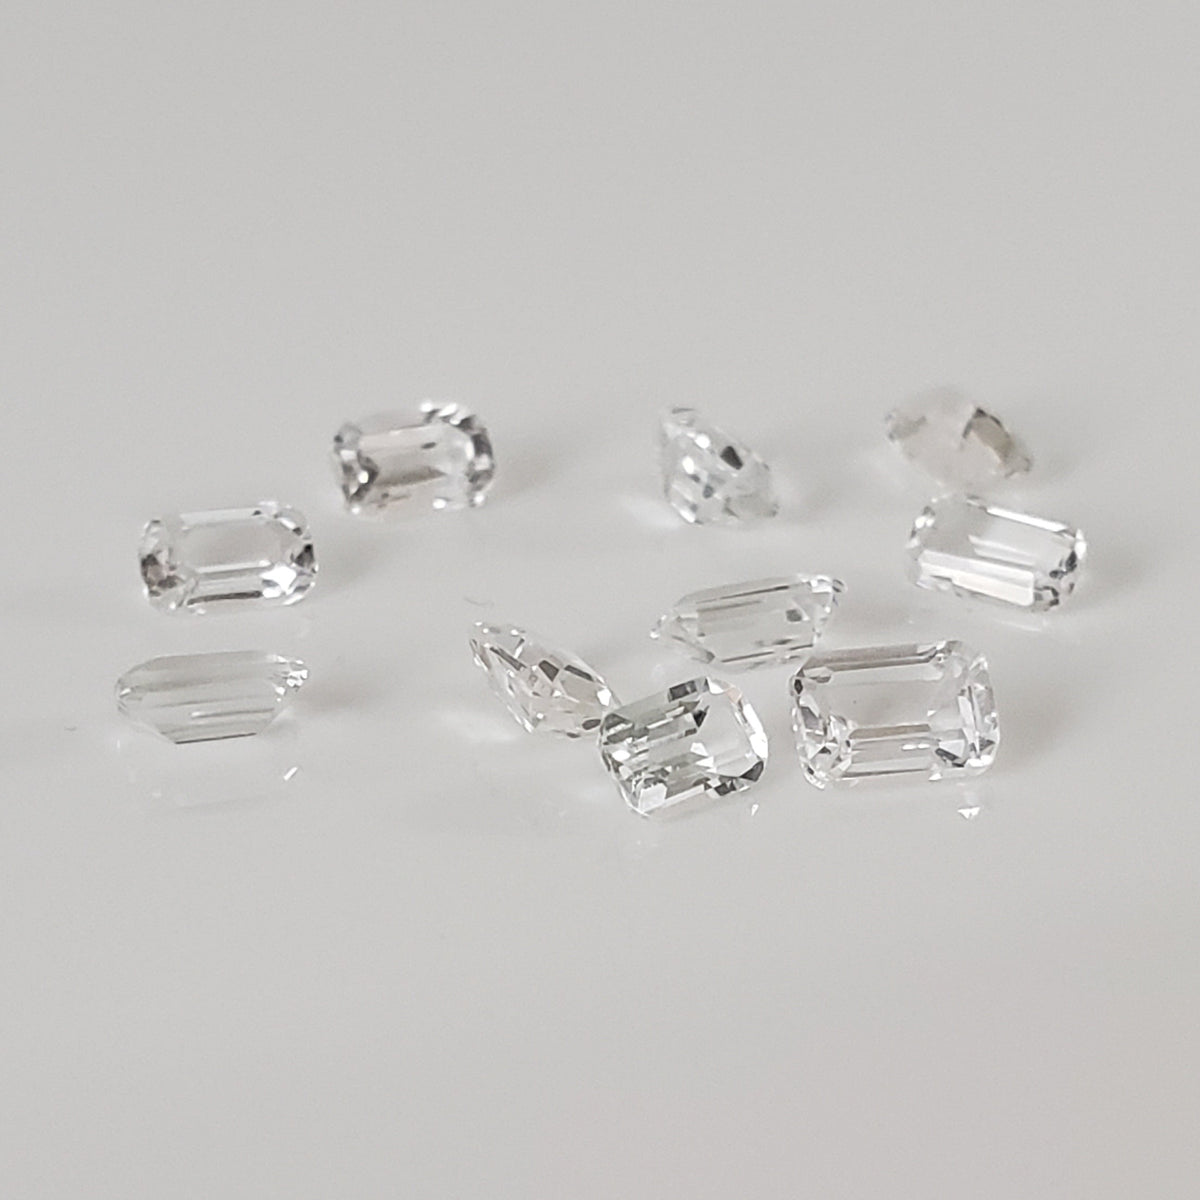 Topaz | 11 Piece Gemstone Lot | Octagon Cut | White | 3.42tcw